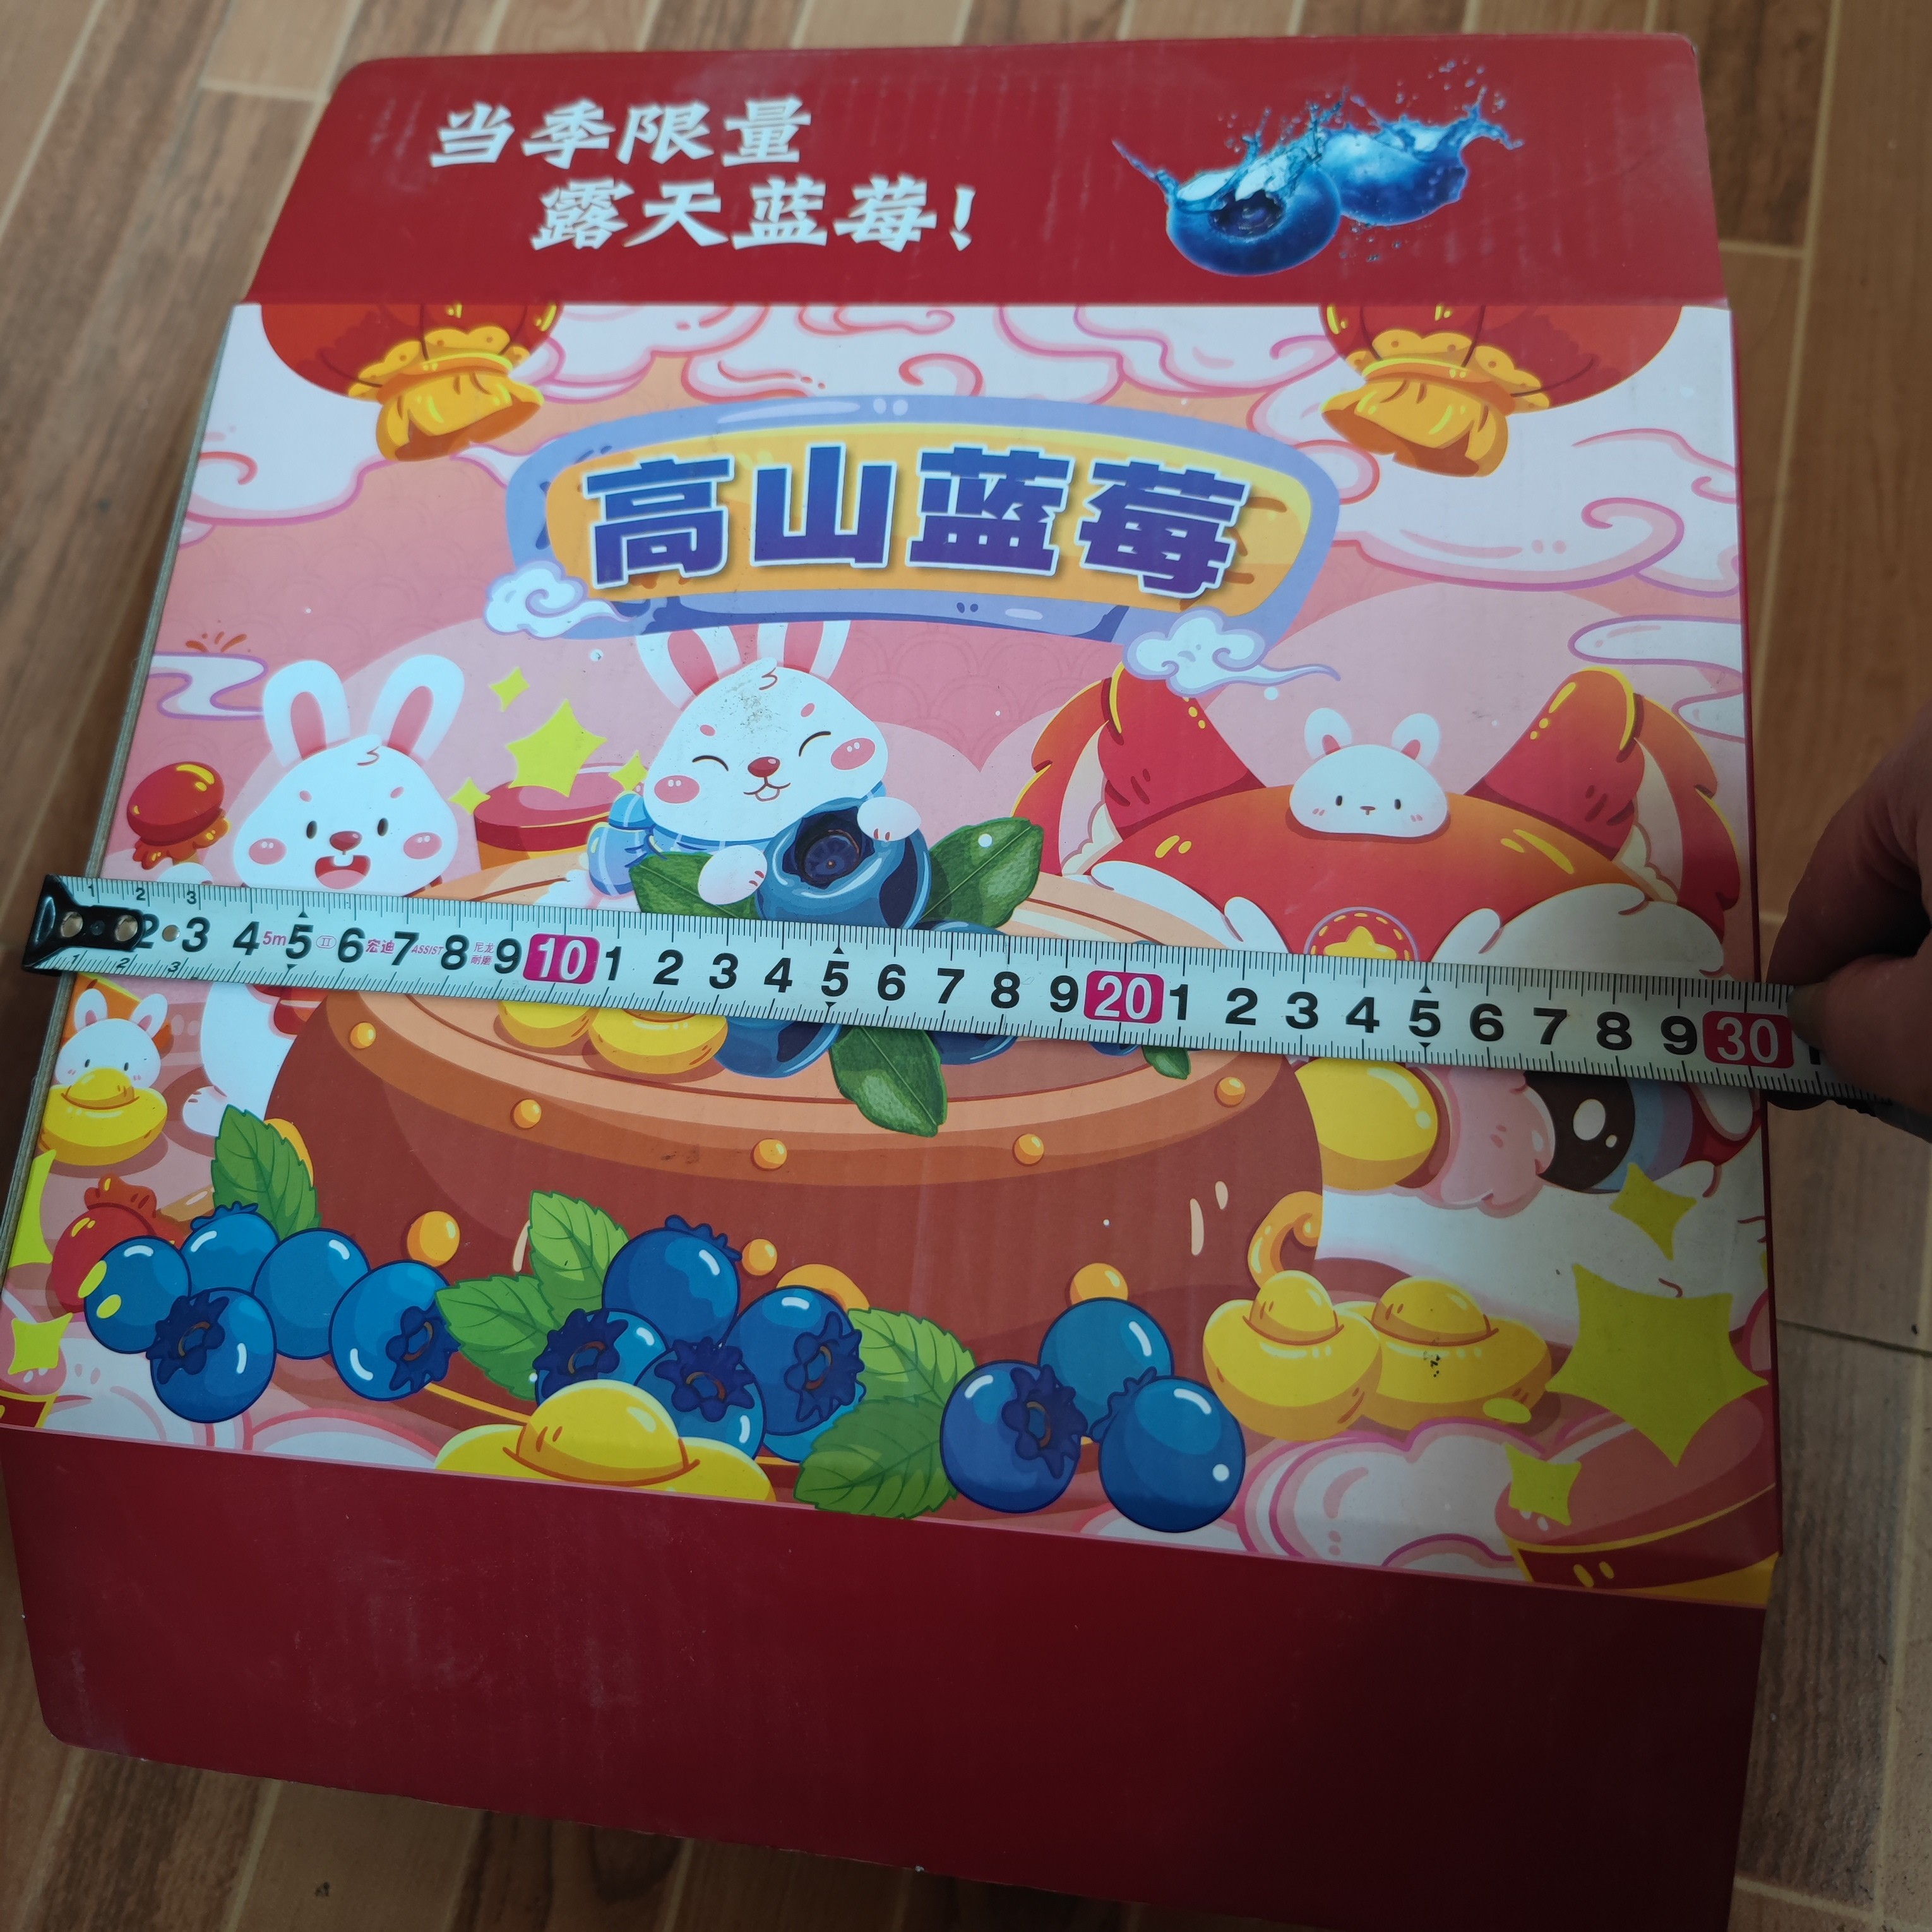 【礼盒】送人加冰袋礼盒云南澄江抚仙湖蓝莓本店铺礼盒只是盒子